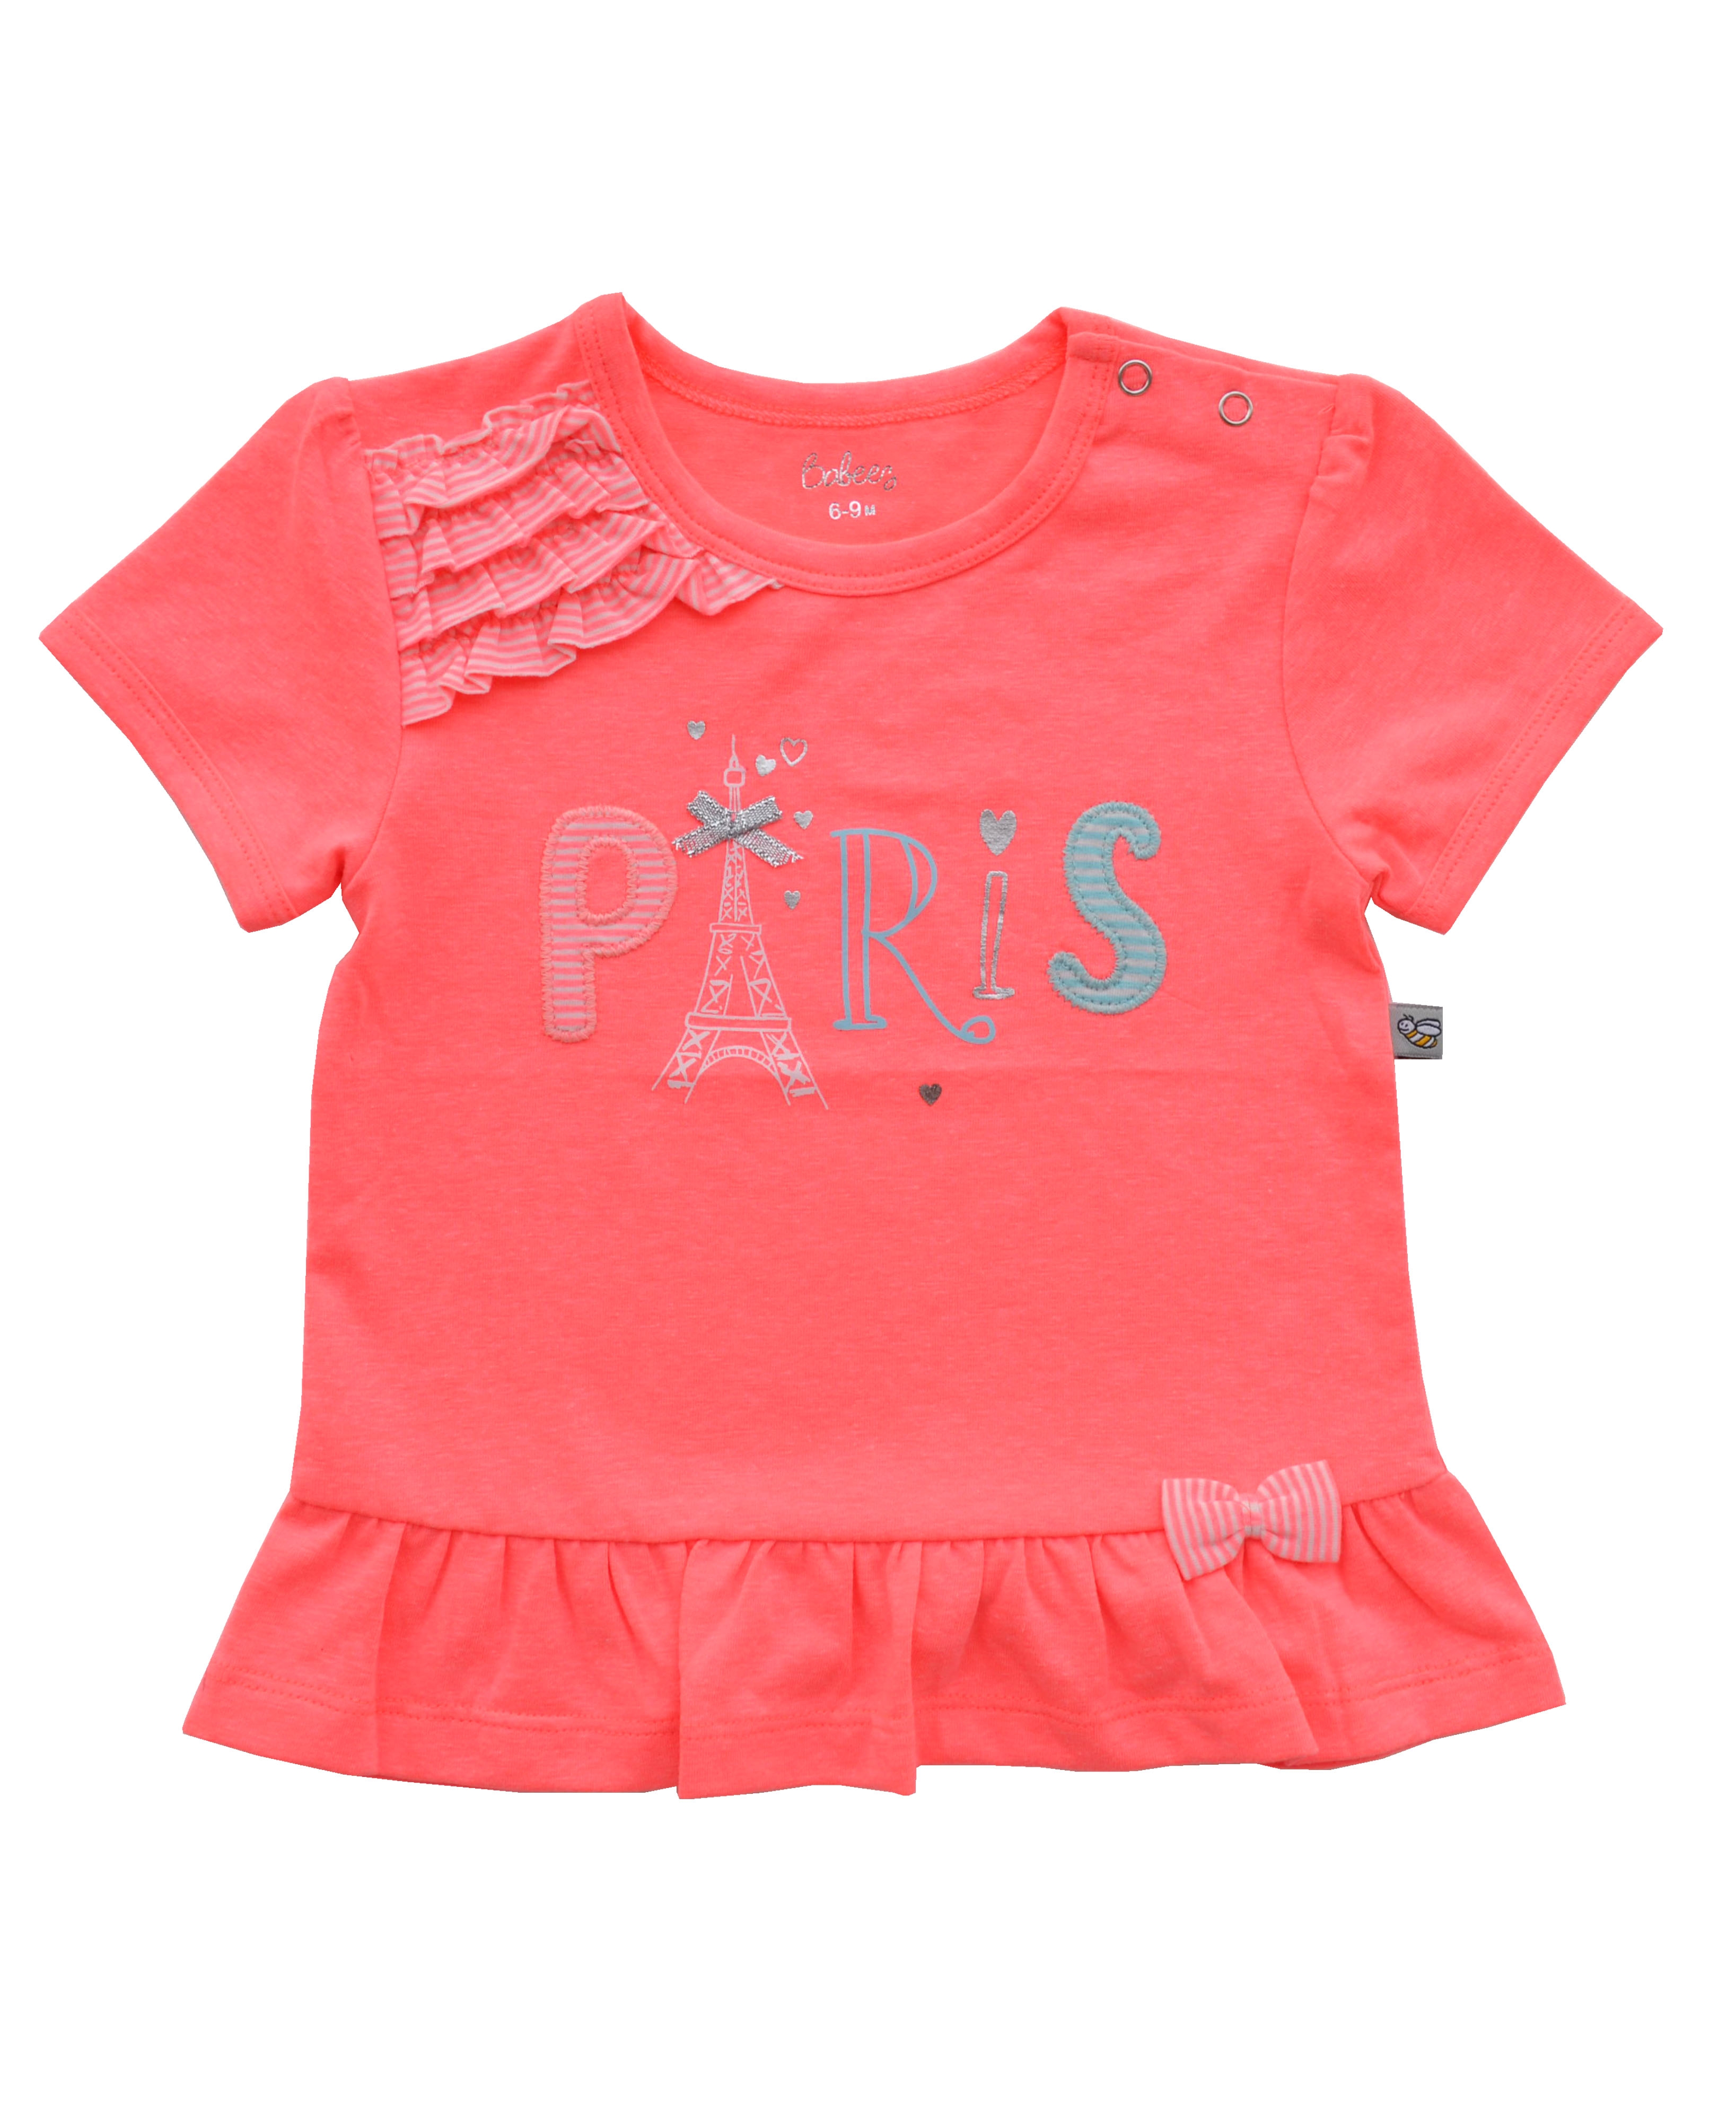 Babeez | PARIS Applique on Orange colour Short Sleeves Top (95% Cotton 5% Elasthan Jersey) undefined